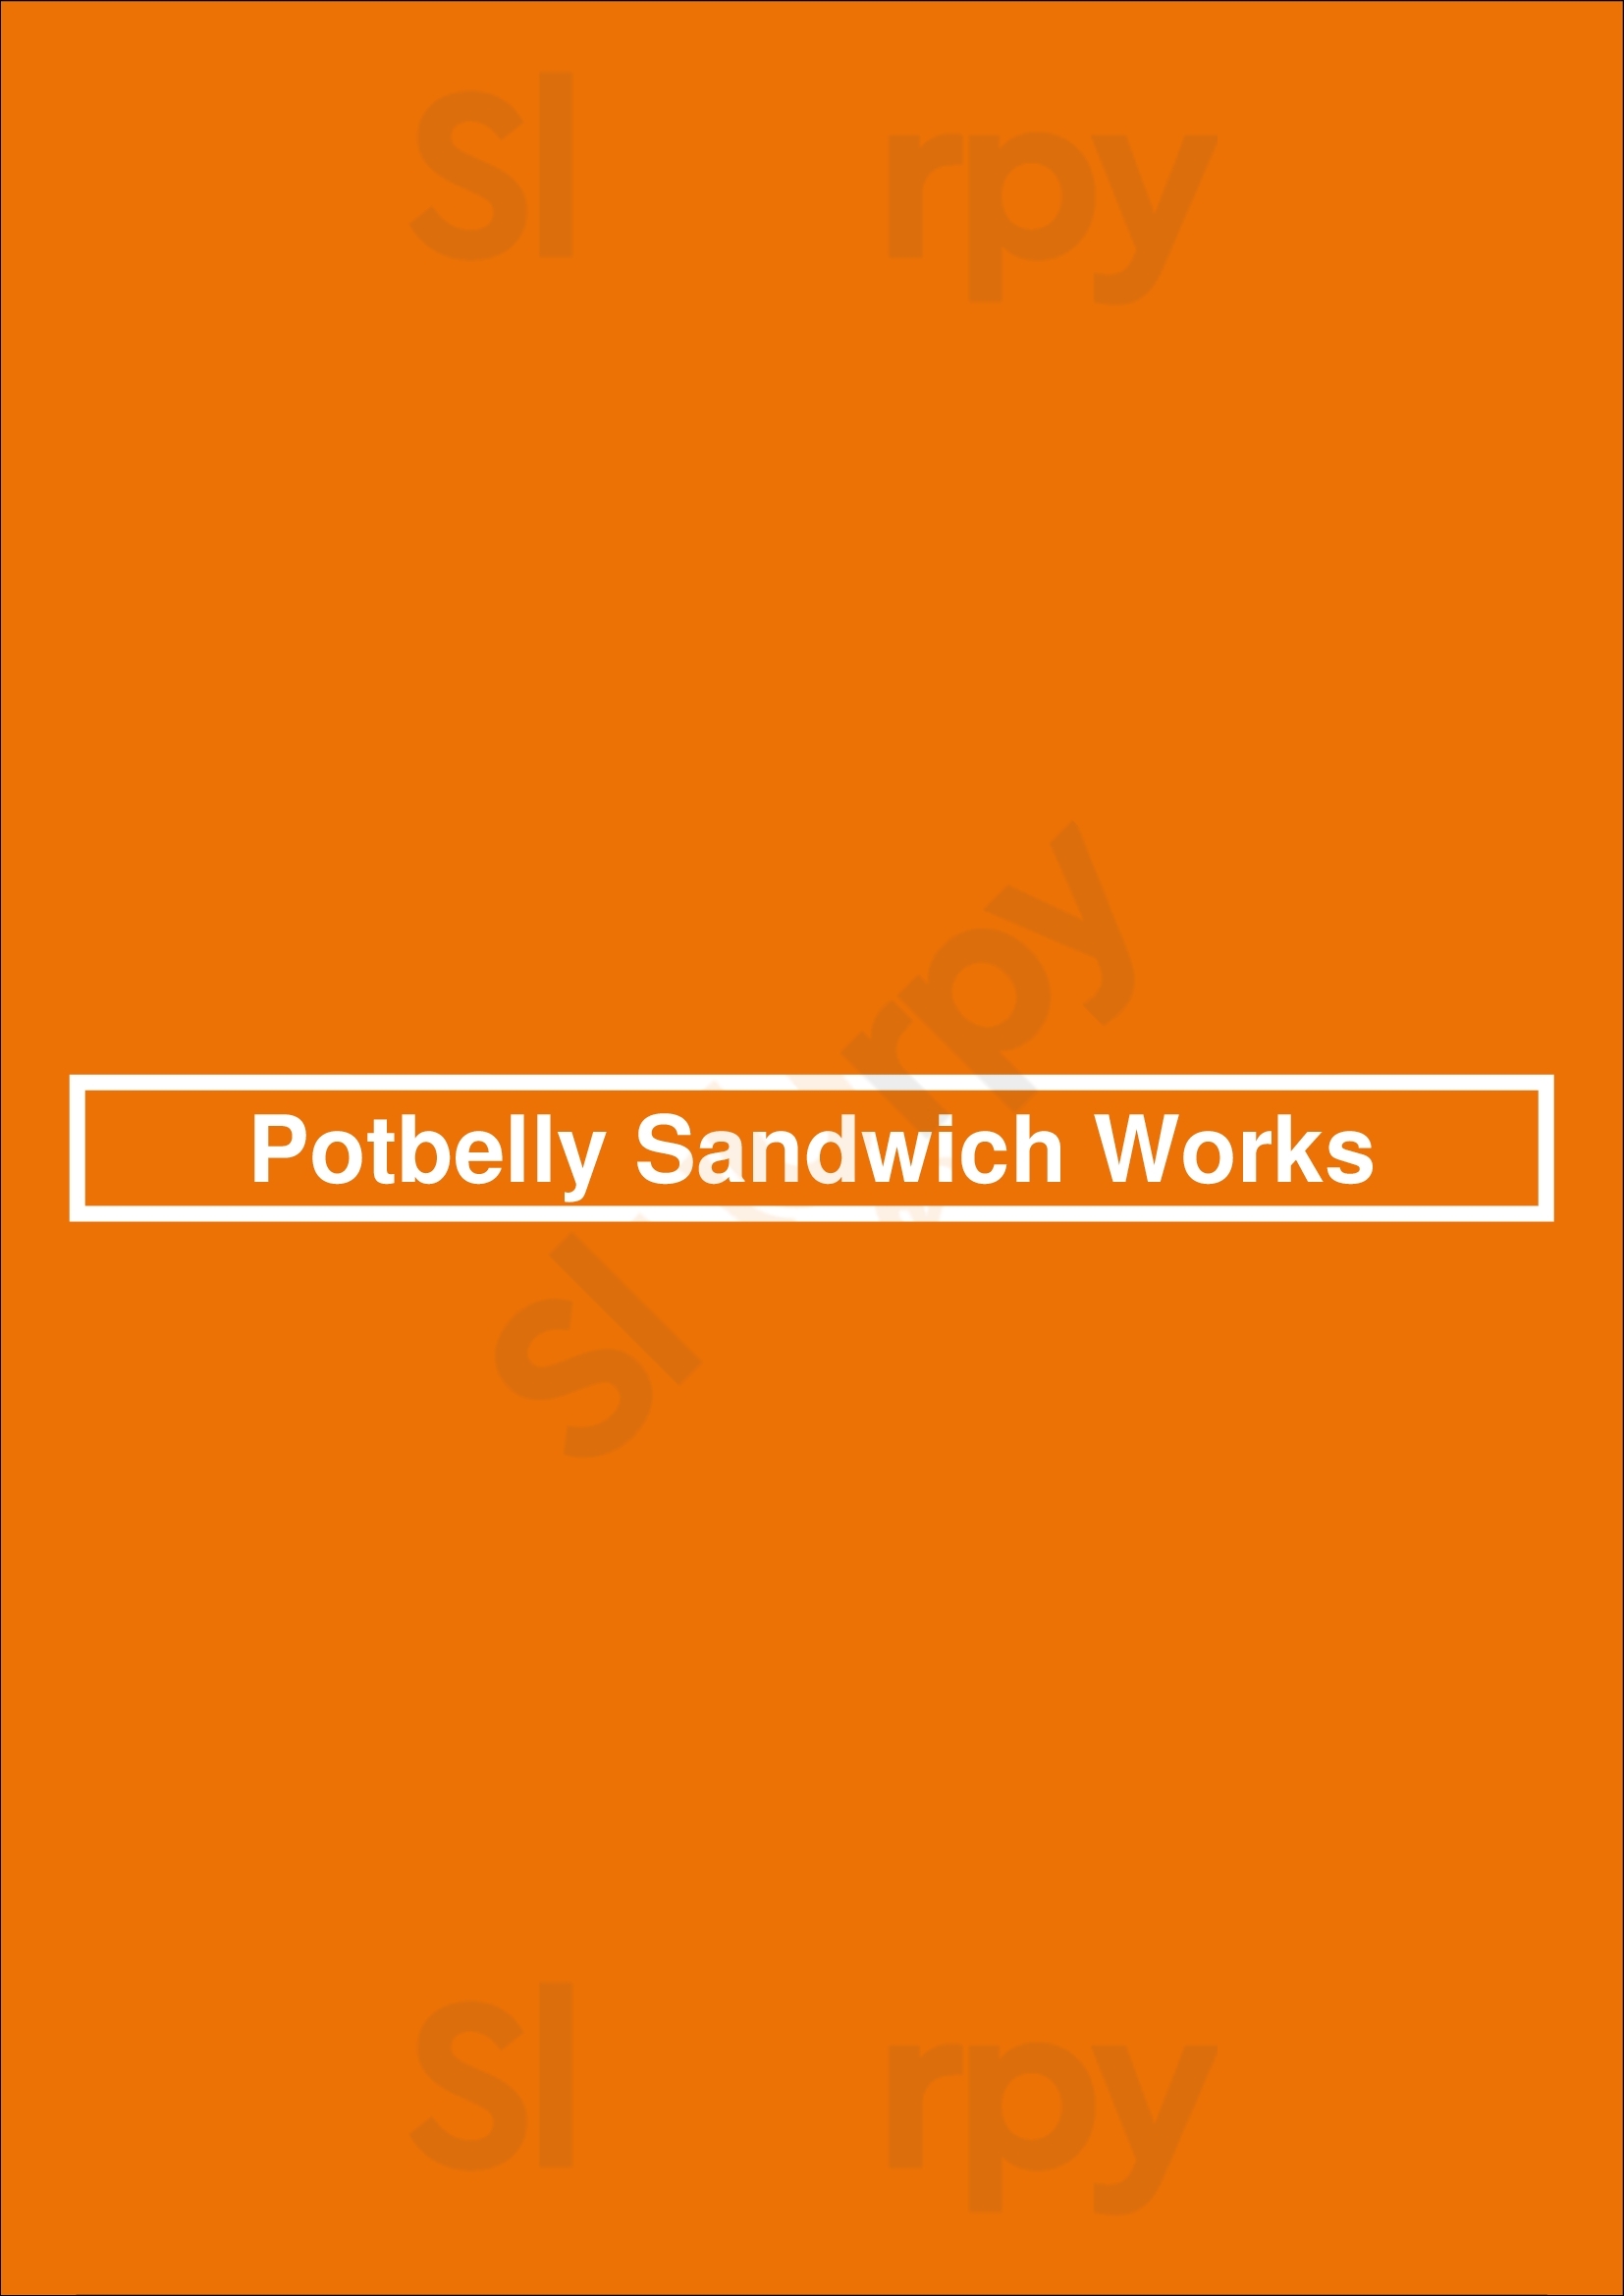 Potbelly Sandwich Shop Phoenix Menu - 1